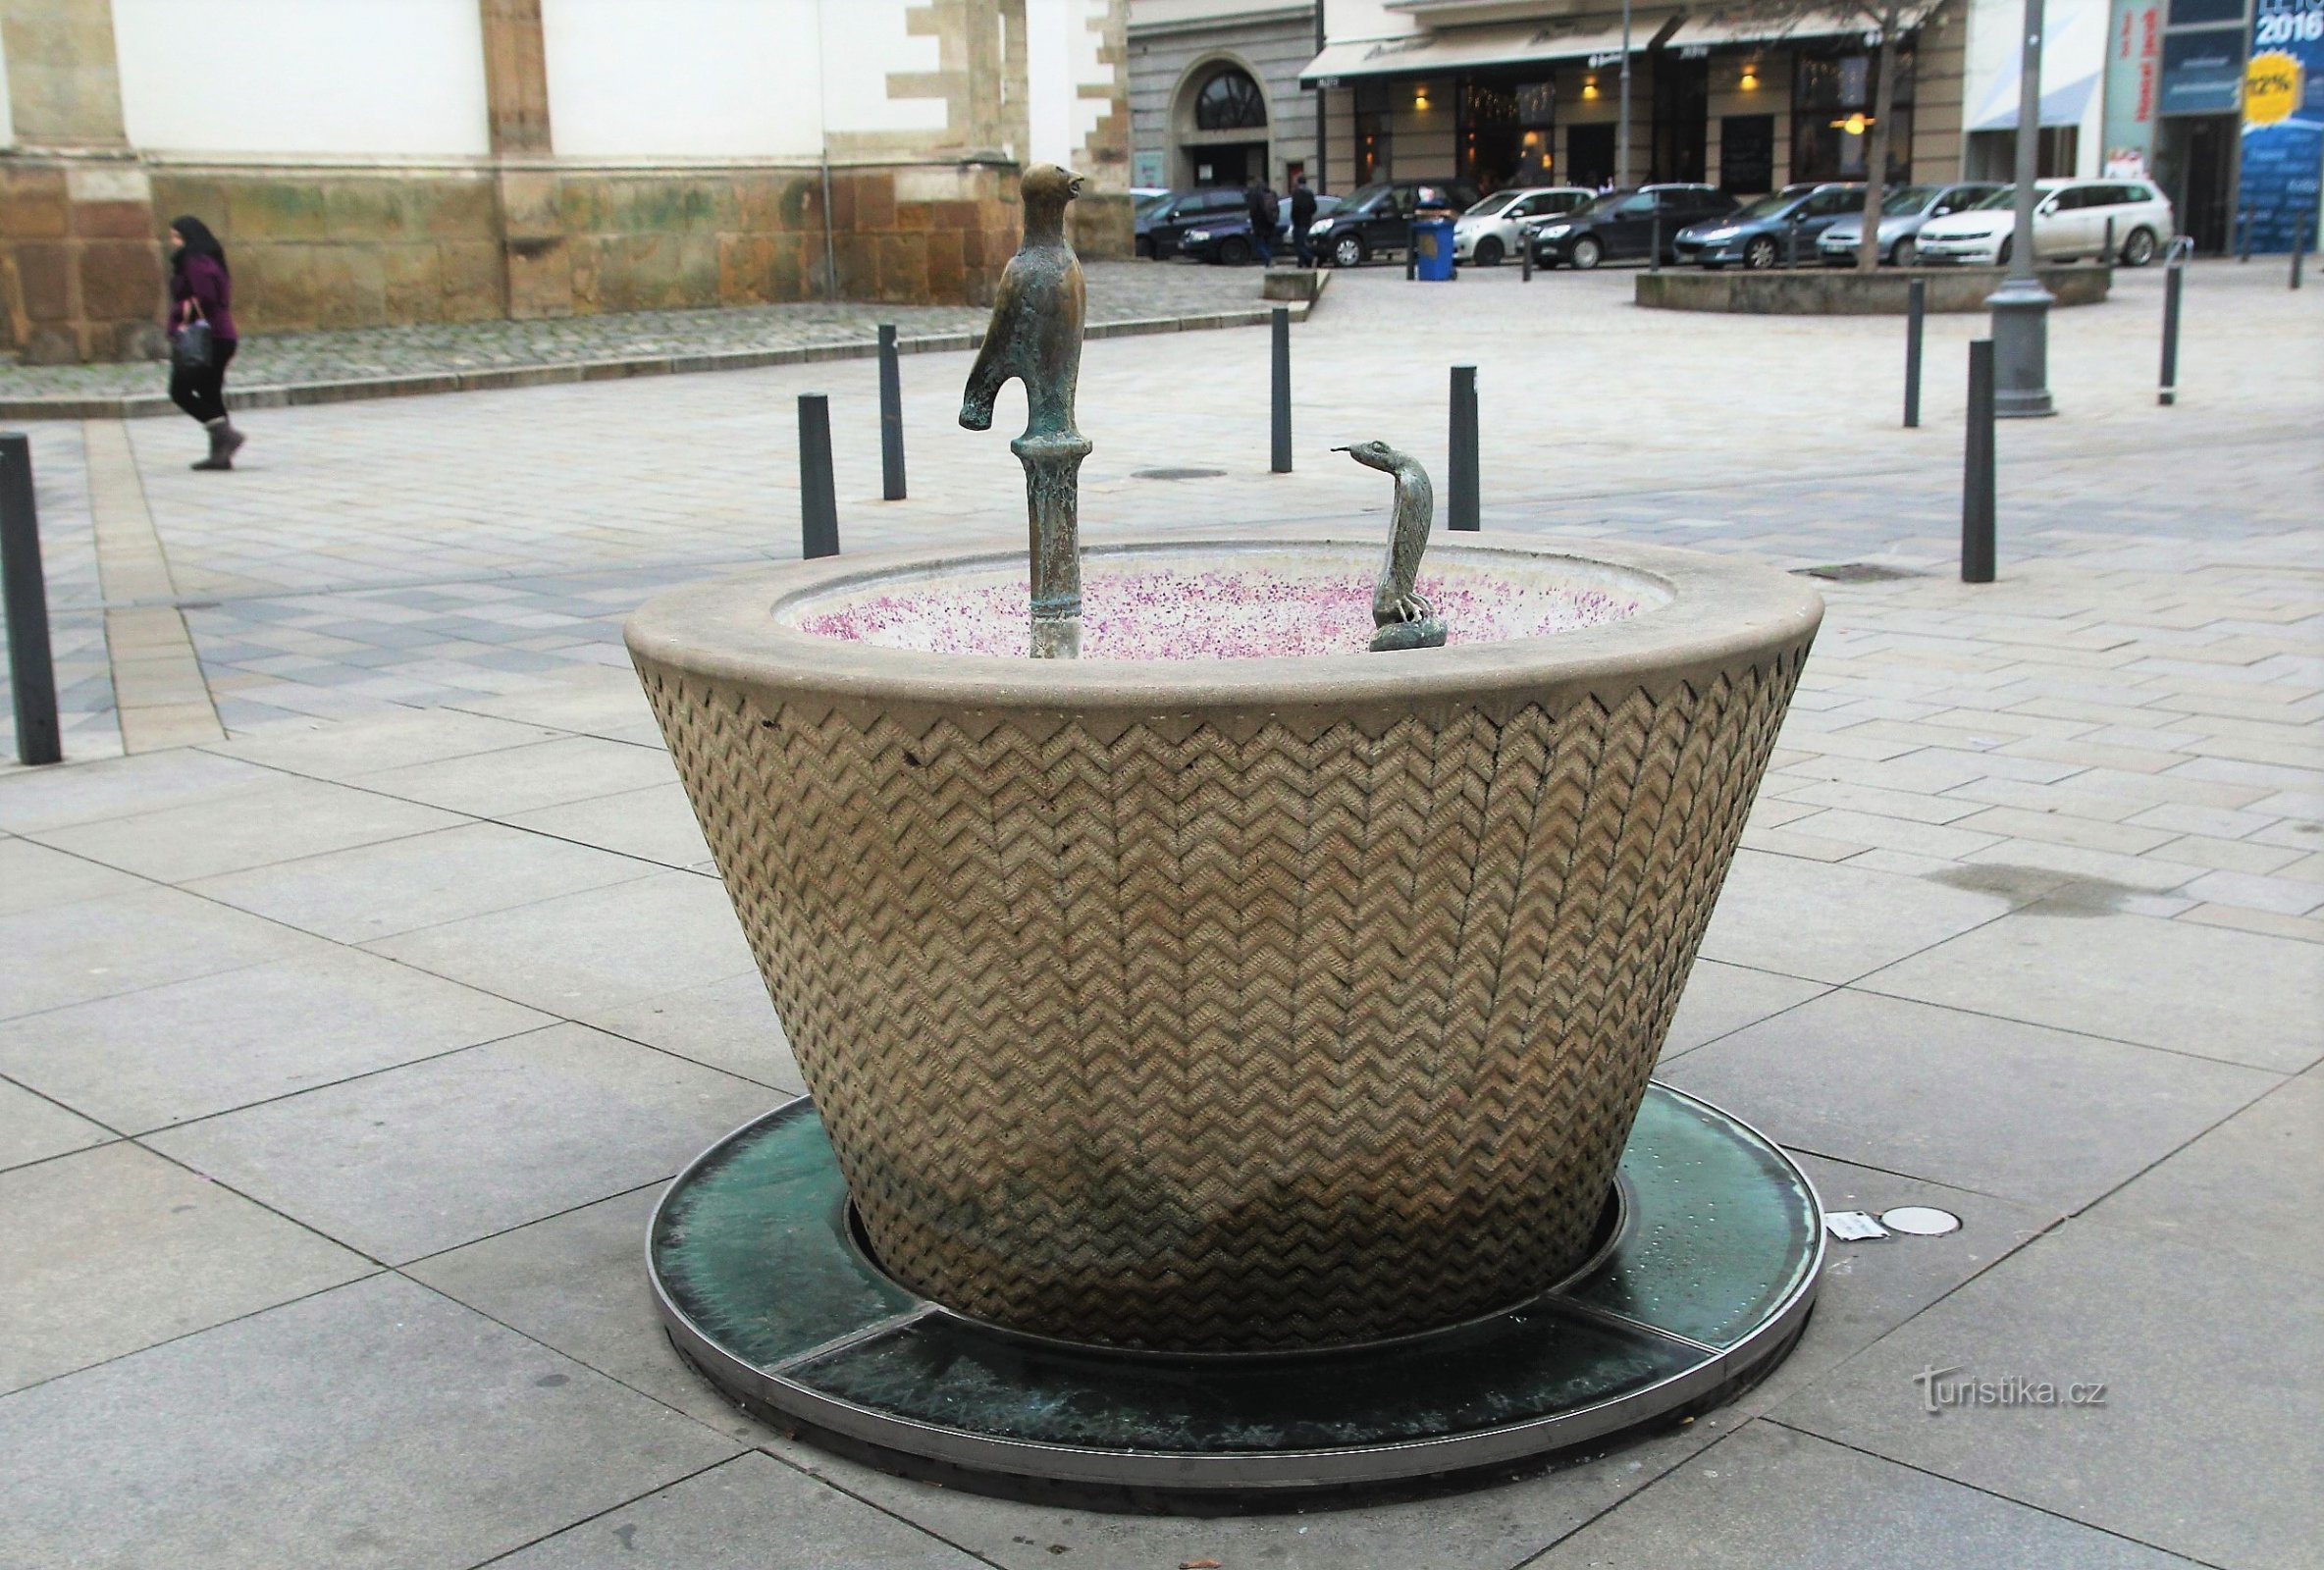 Brno - fontanna na Jakubské náměstí